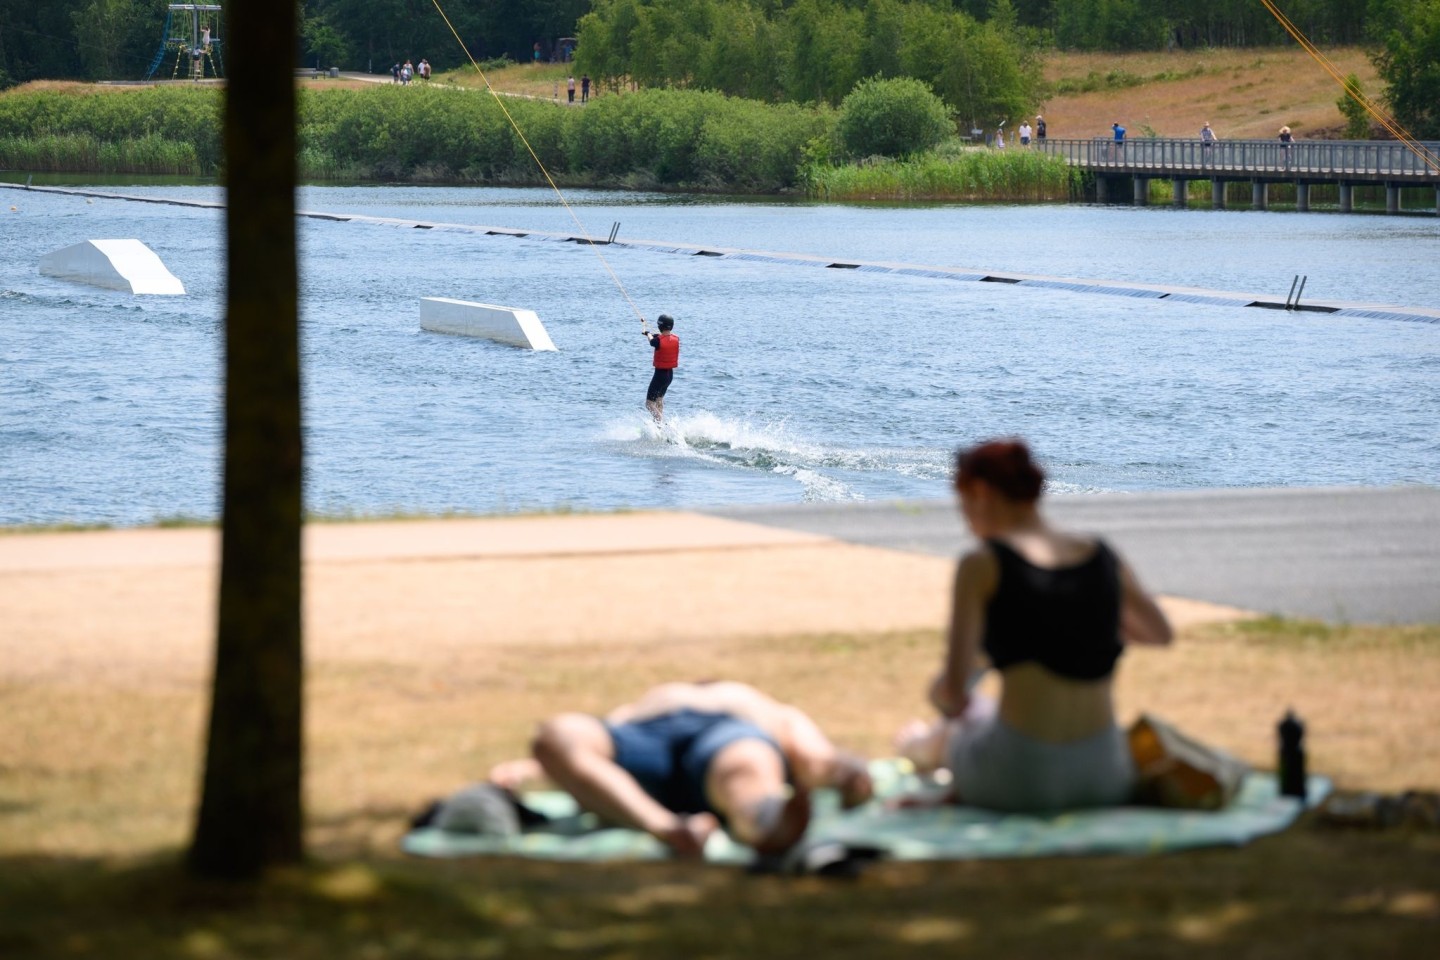 Ein Wasserski-Fahrer ist auf dem Stadtparksee in Norderstedt nördlich von Hamburg unterwegs.